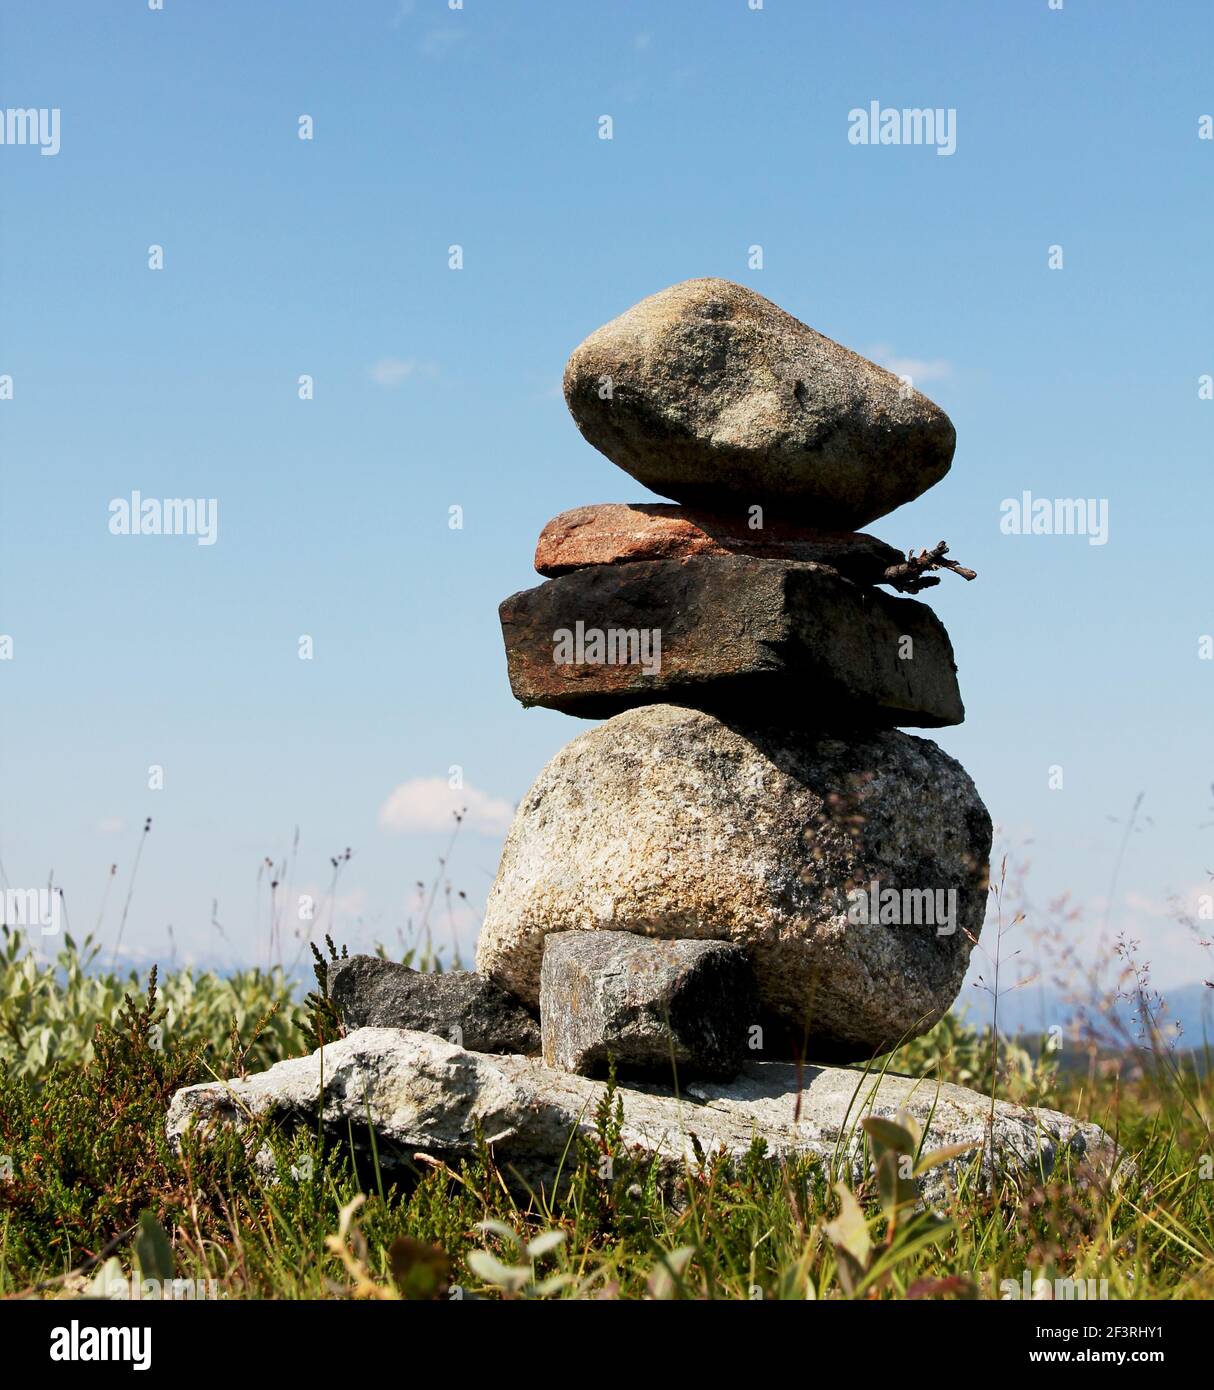 Una pila di pietre in equilibrio. Le pietre sono ruvide e la pila è in piedi in un campo di erba Foto Stock